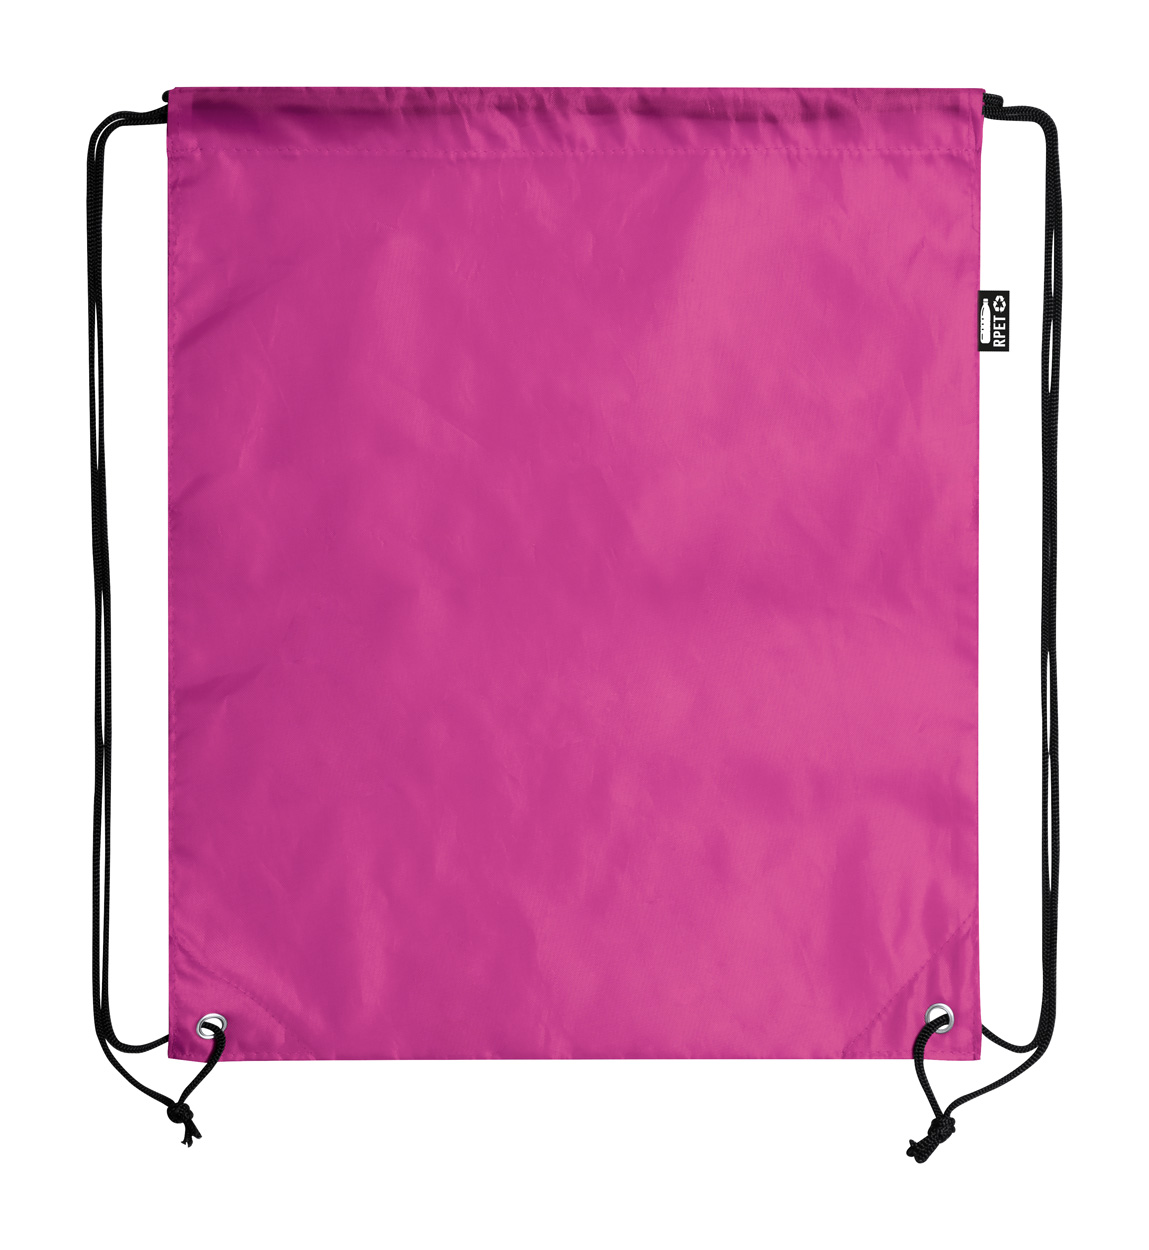 Lambur RPET drawstring bag - pink